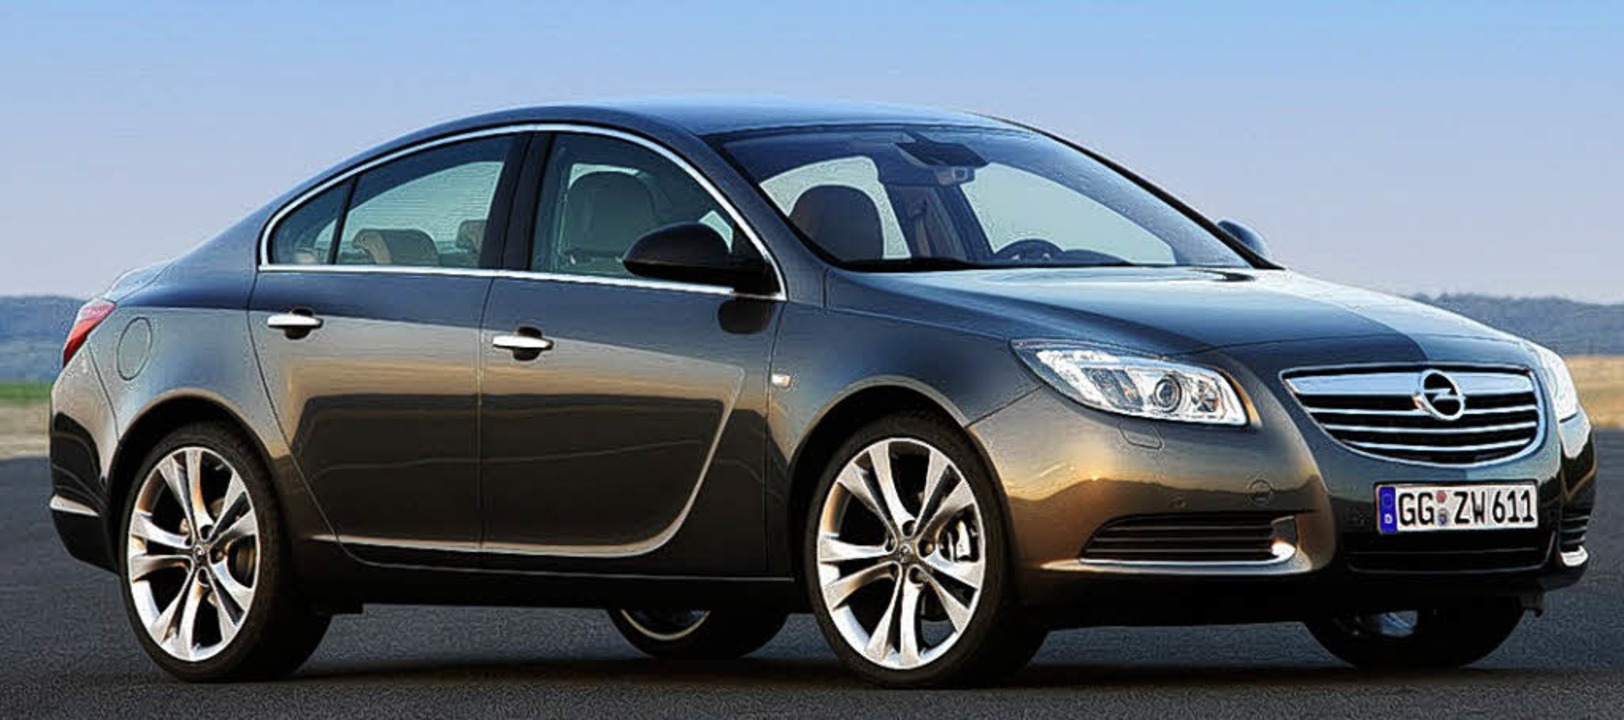 Opel insignia 1.8. Opel Insignia 2008-2013. Opel Insignia 2010. Opel Insignia 2010 2.8. Opel Insignia дизель.